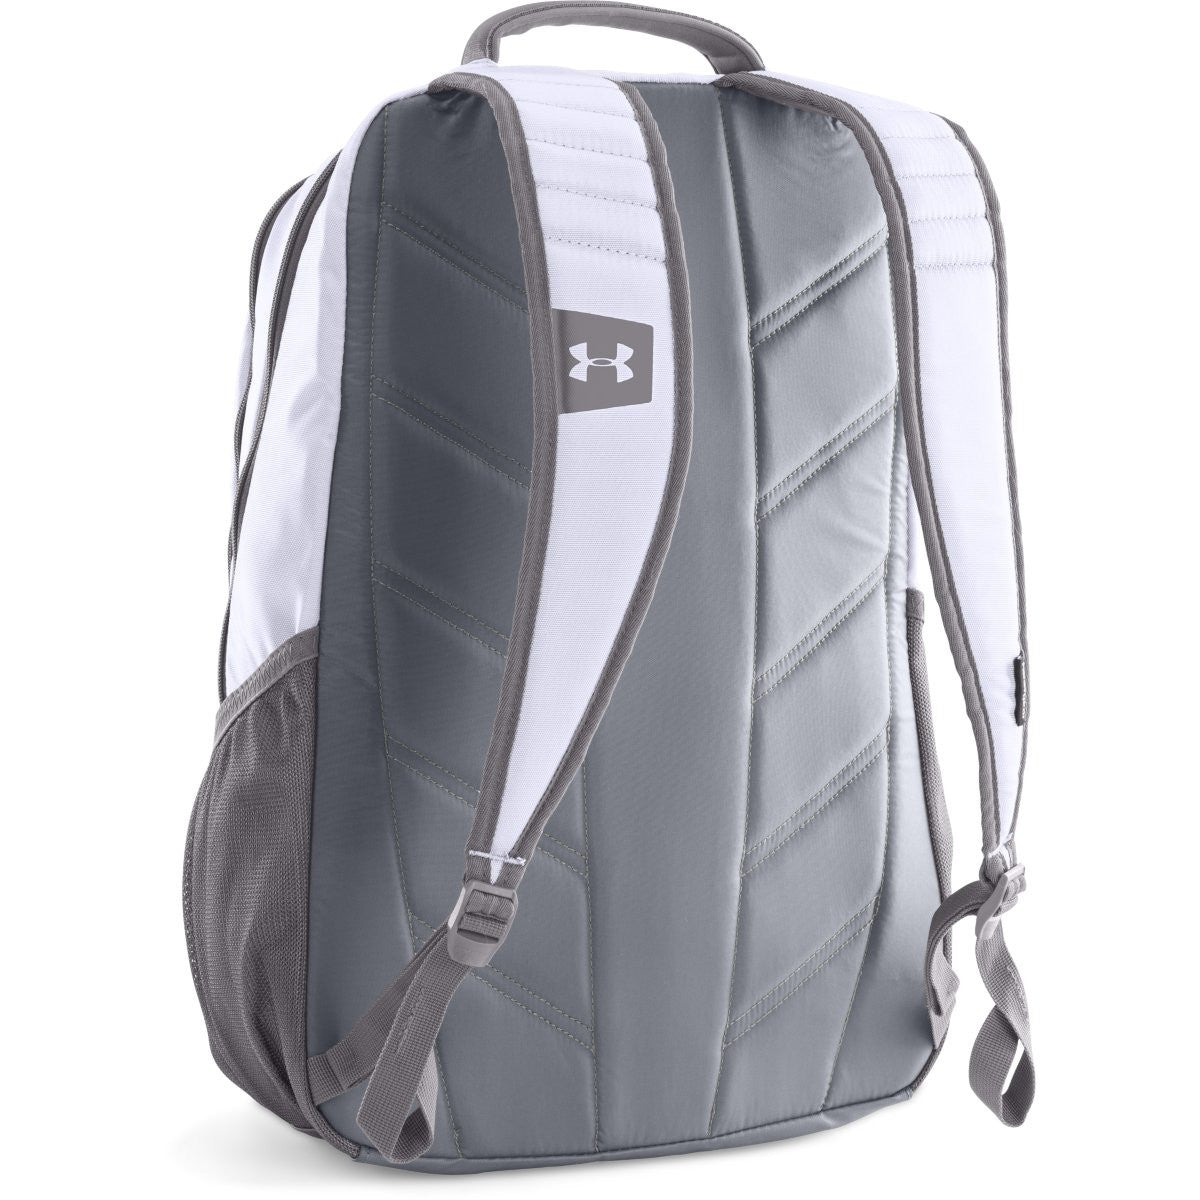 Hustle II Backpack, White, One Size 